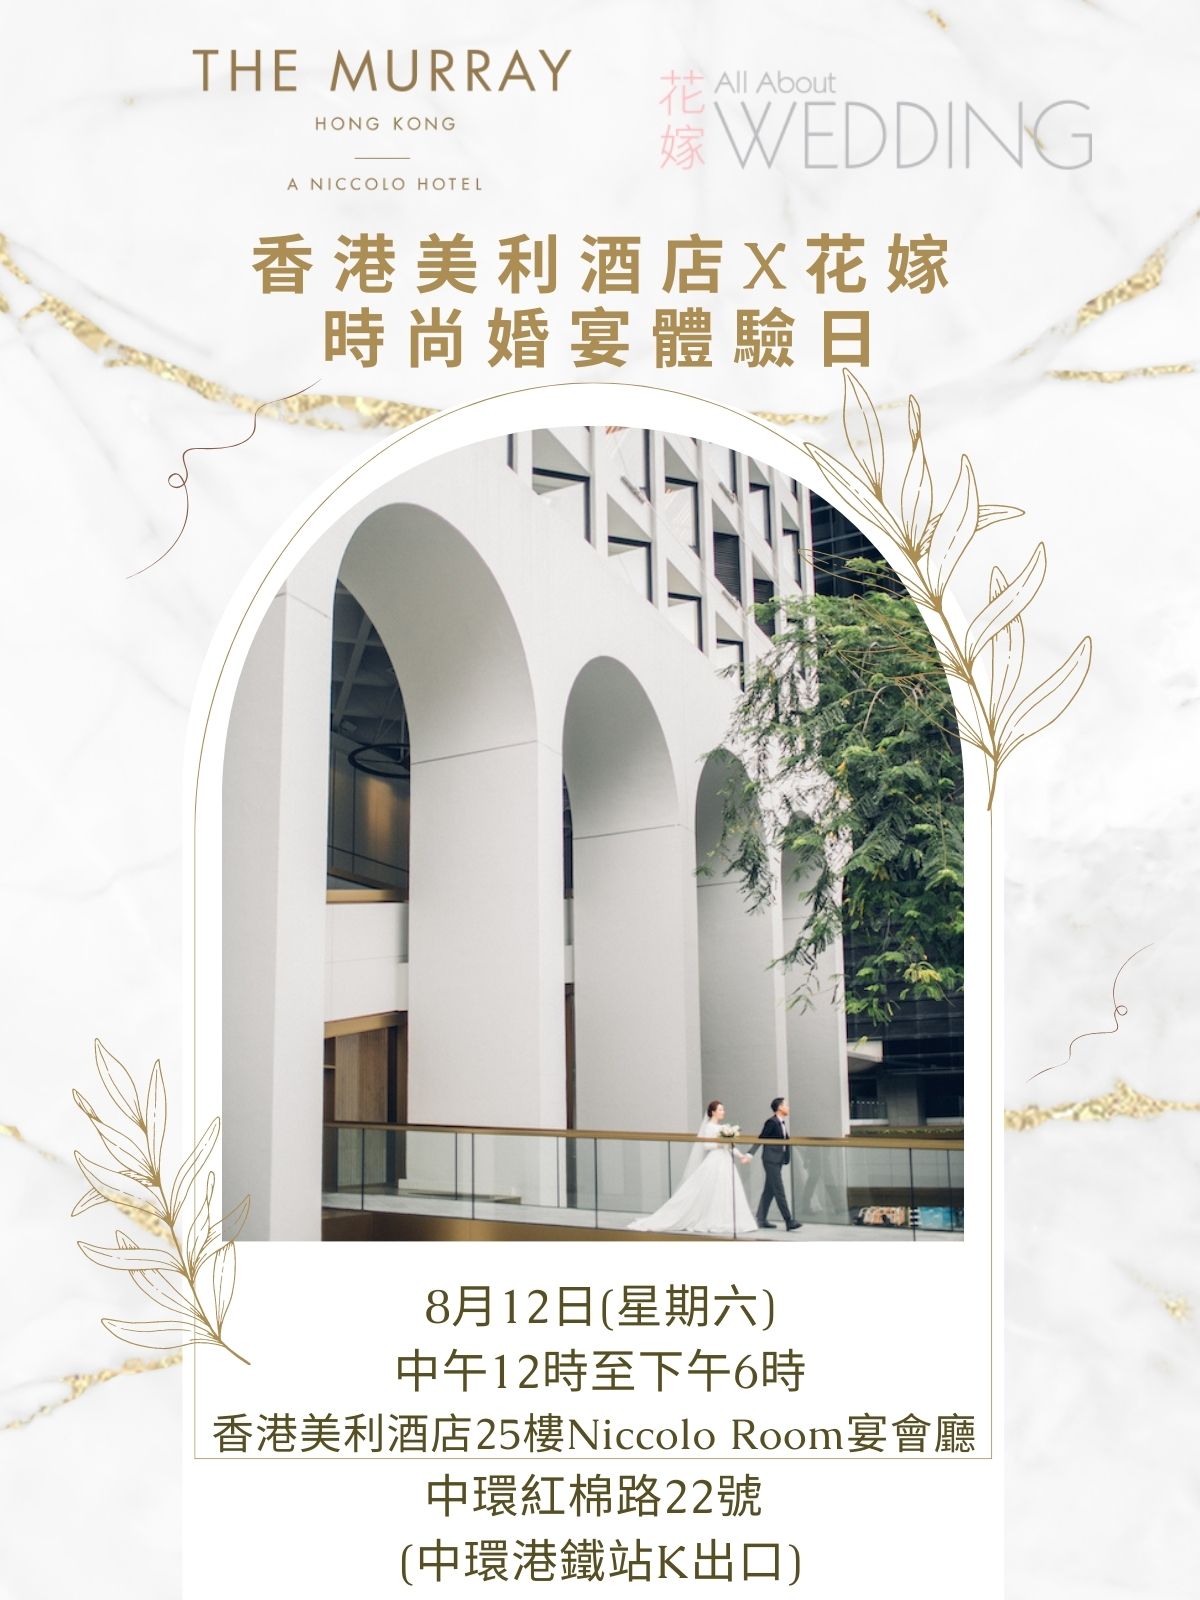 香港美利酒店 X 花嫁 時尚婚宴體驗日